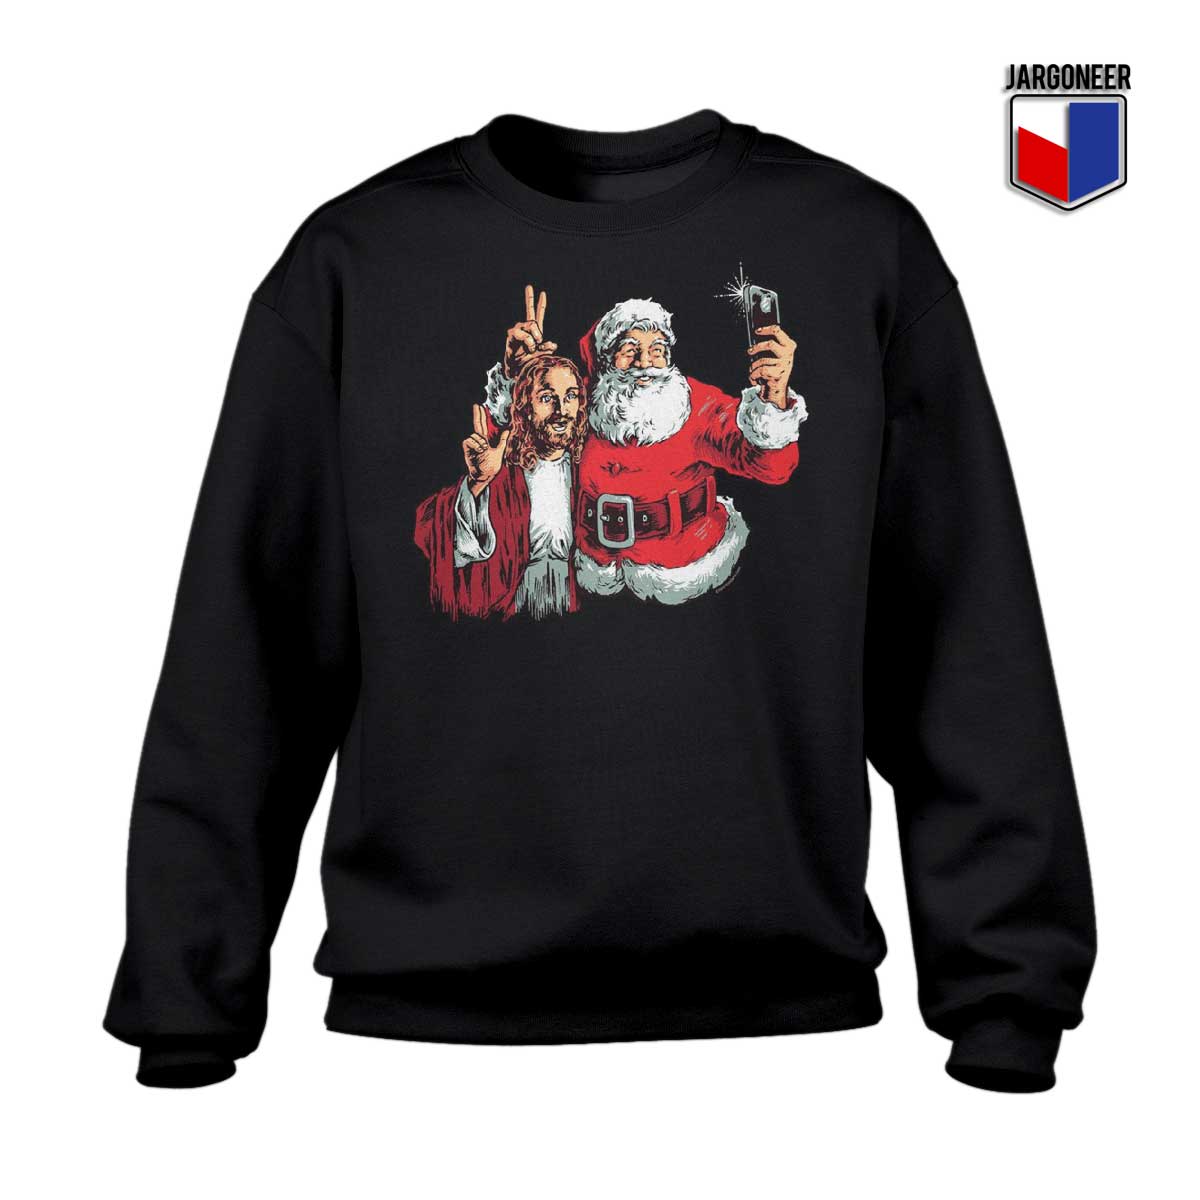 All About Jesus And Santa Crewneck Sweatshirt - Shop Unique Graphic Cool Shirt Designs